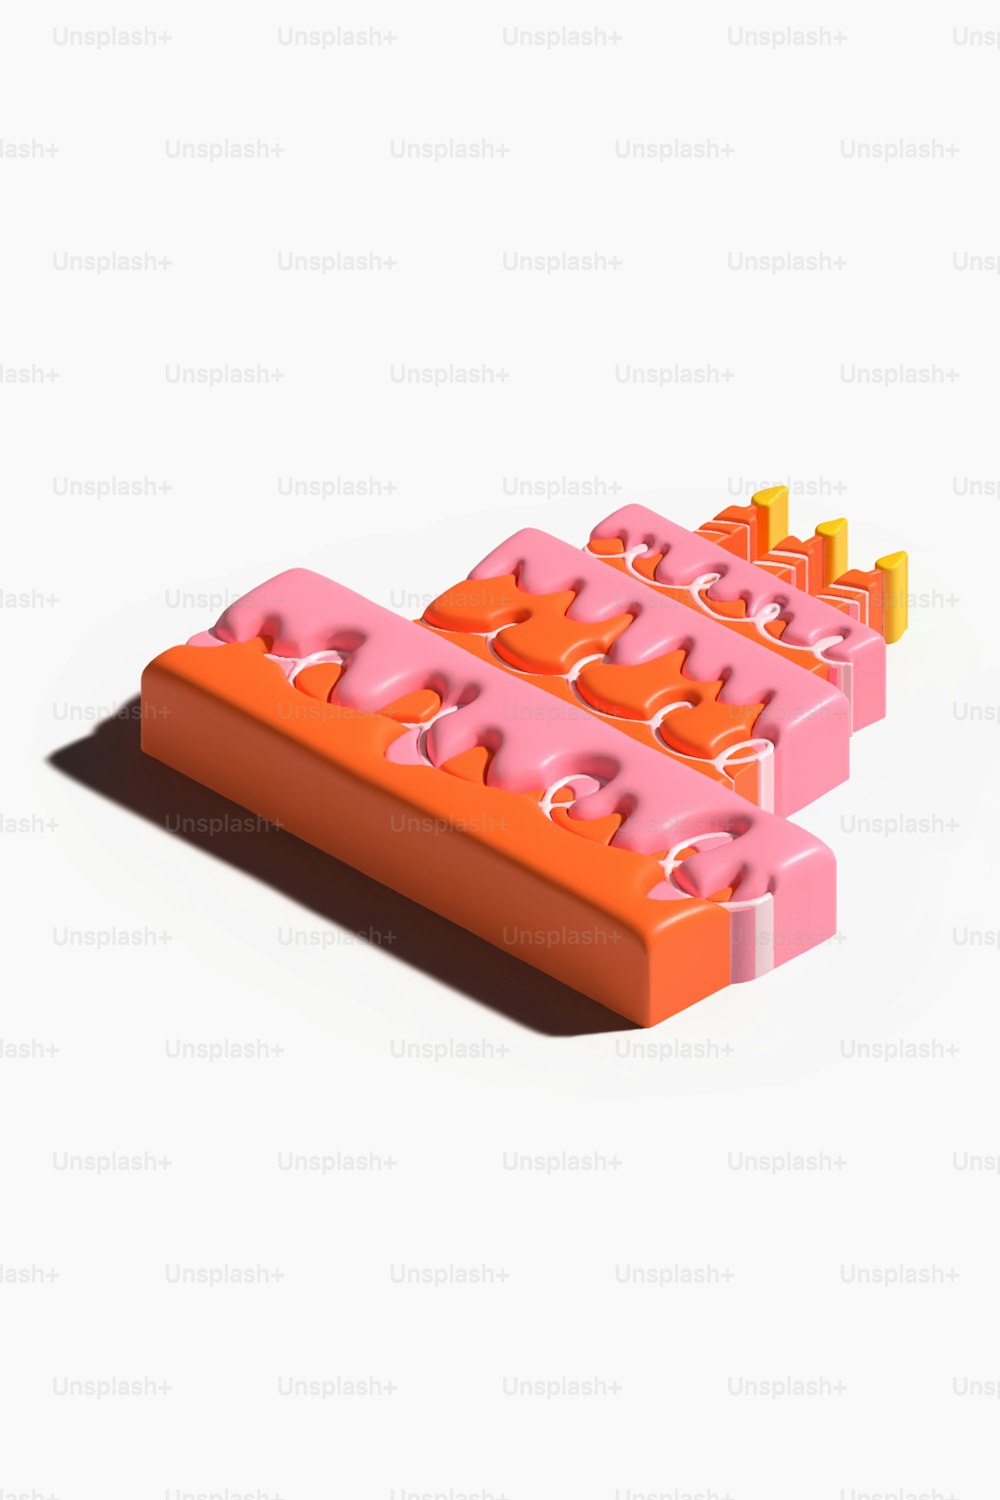 un couple de Legos orange et rose assis l’un sur l’autre